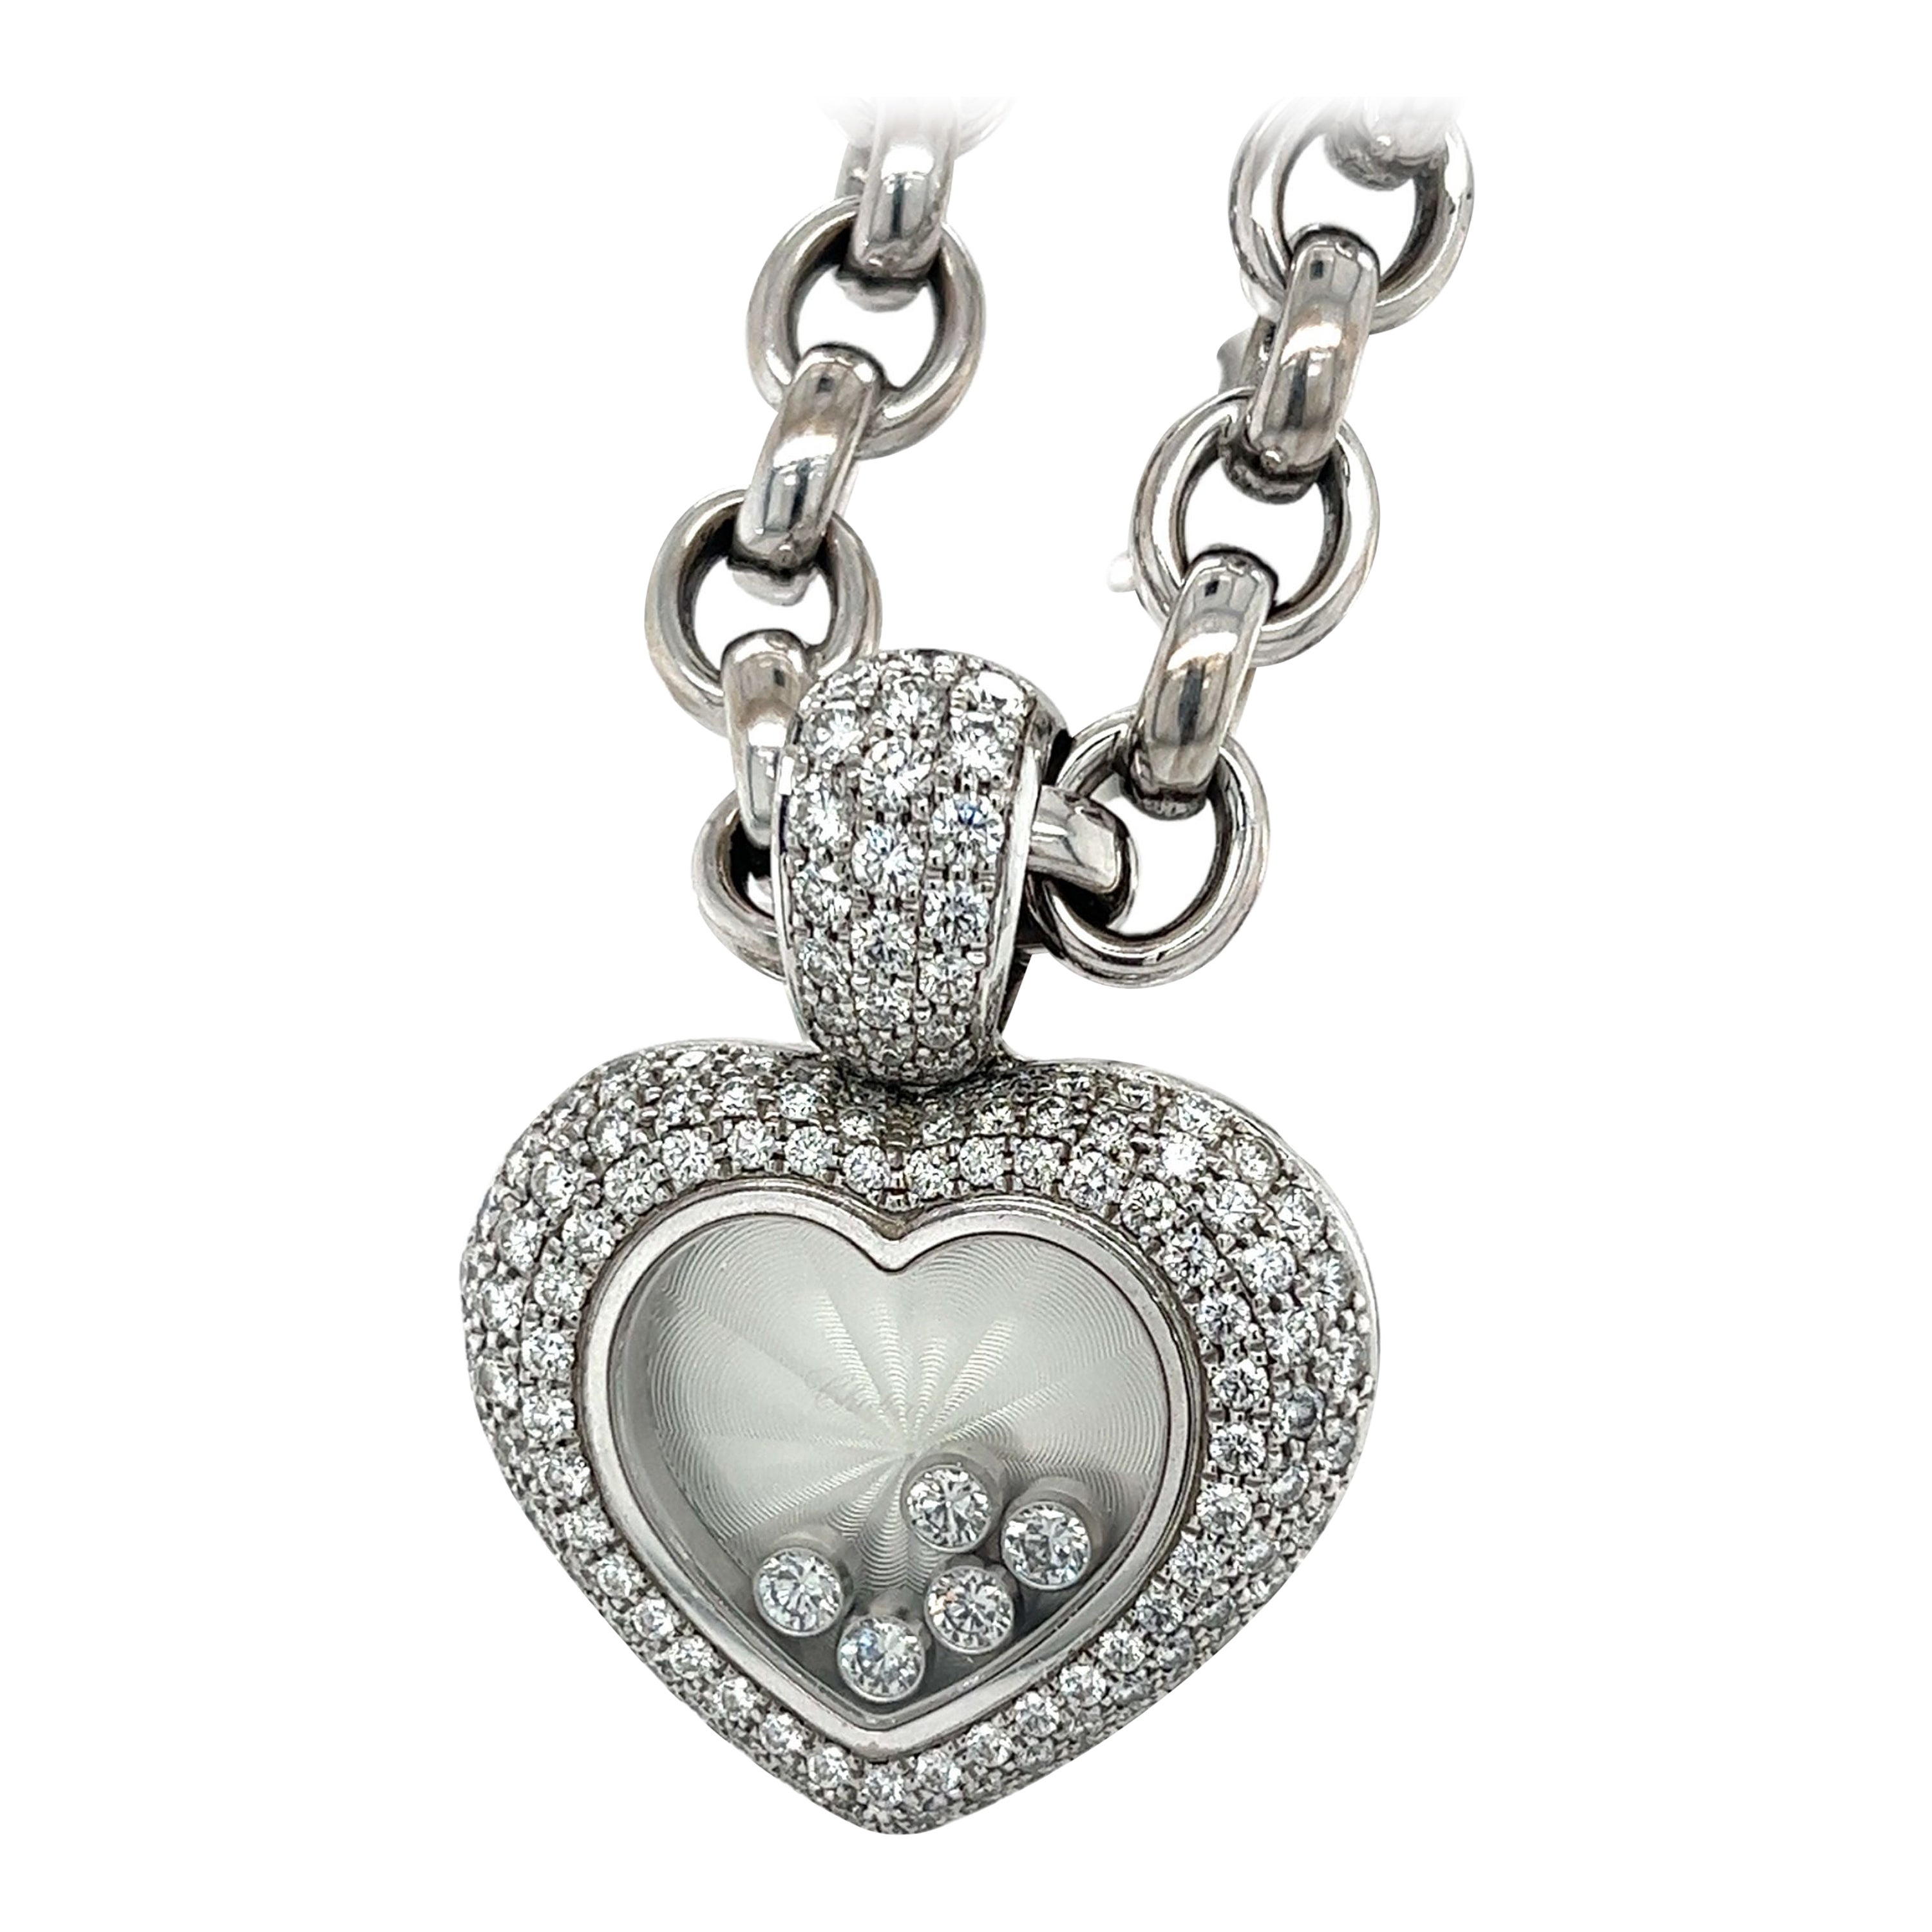 gold pendant with citrine and diamond hearts - Inez Stodel